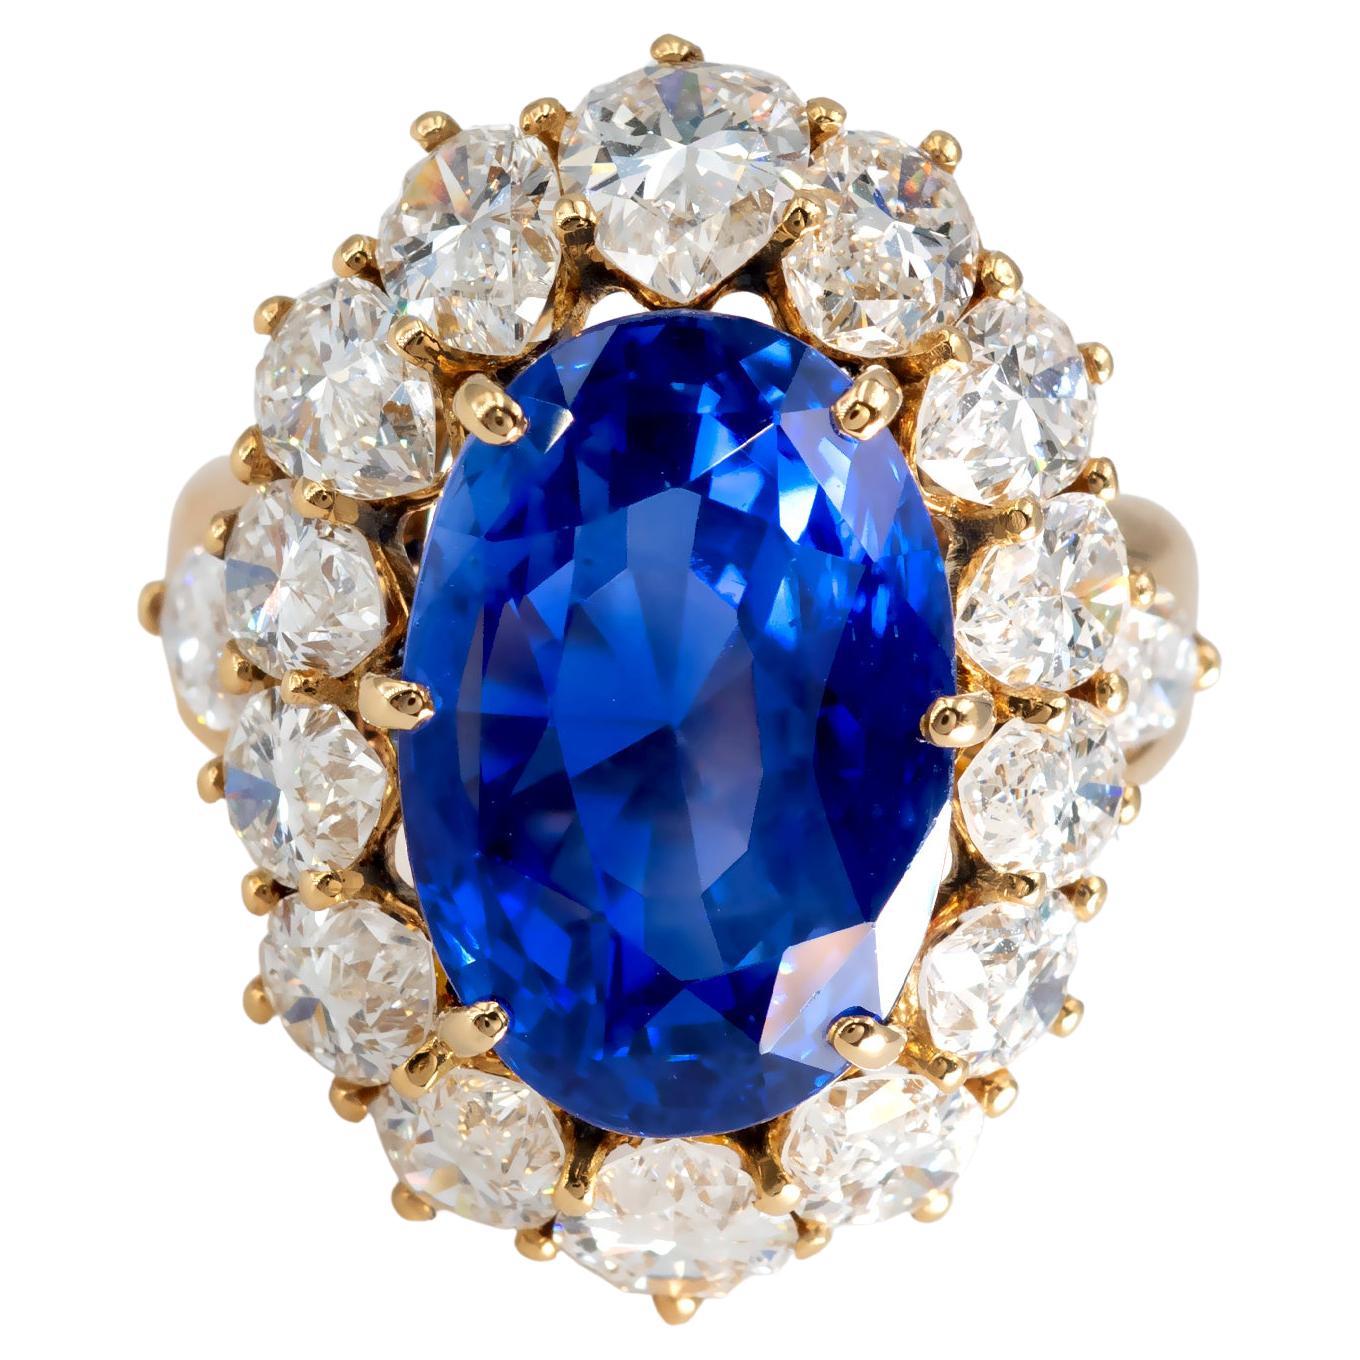 Saphir bleu royal du Sri Lanka (Ceylan) non chauffé de 17,38 carats serti dans une bague unique en or 18 carats. 
Le saphir est accompagné d'un rapport sur les pierres précieuses (certificat) de GRS indiquant qu'il n'a pas été chauffé et qu'il est